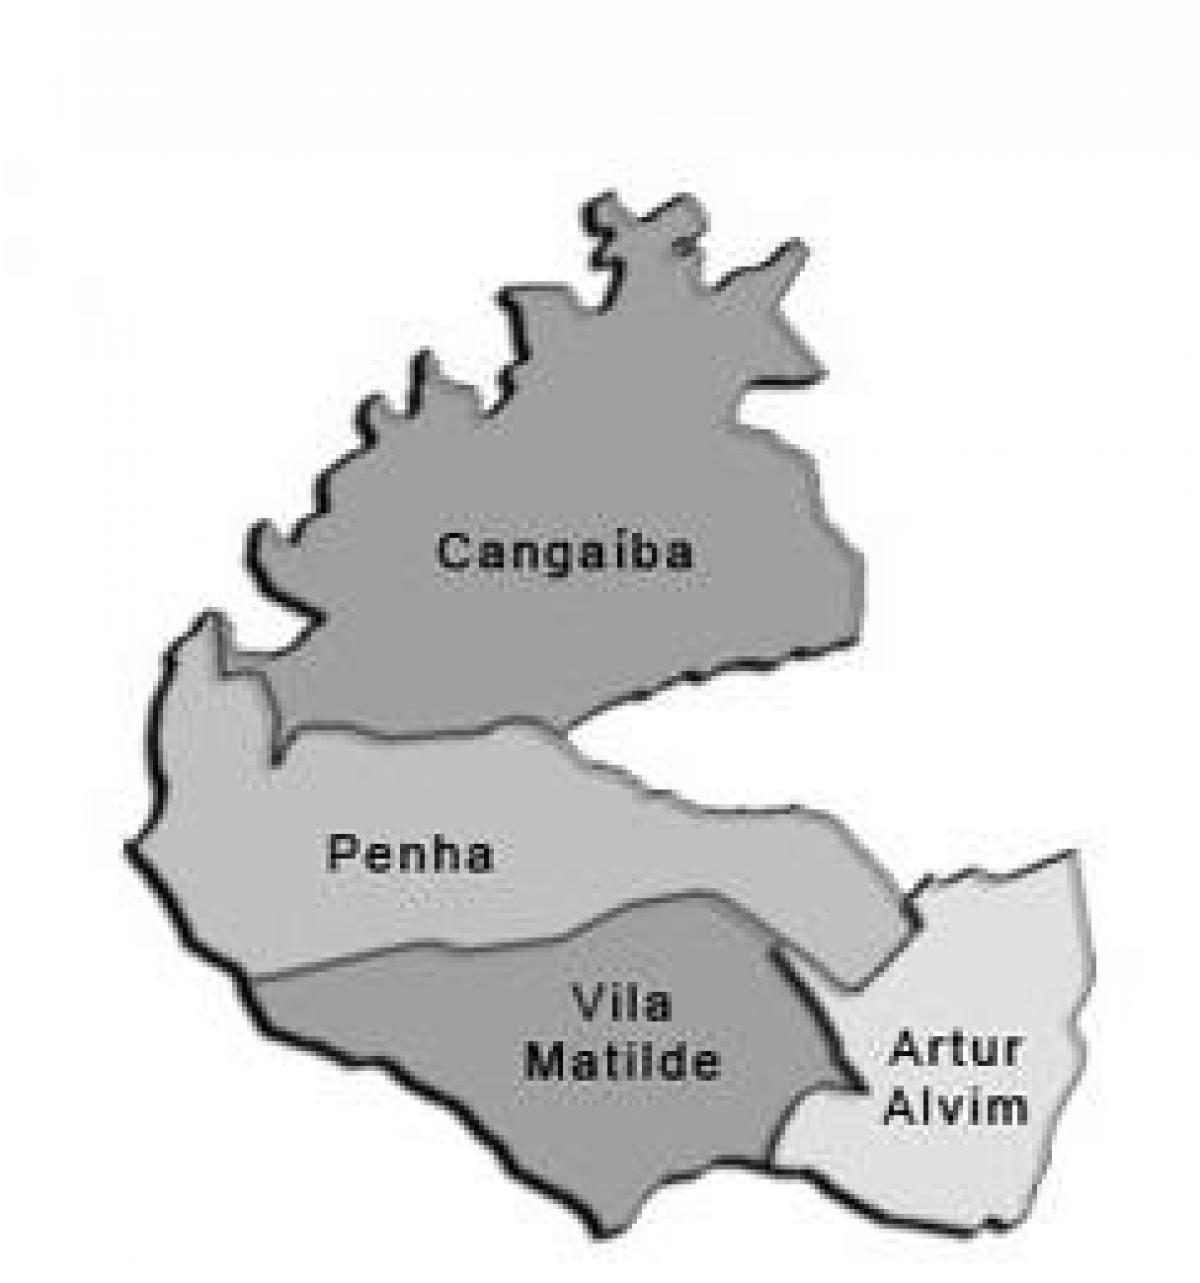 Peta Penha sub-prefecture